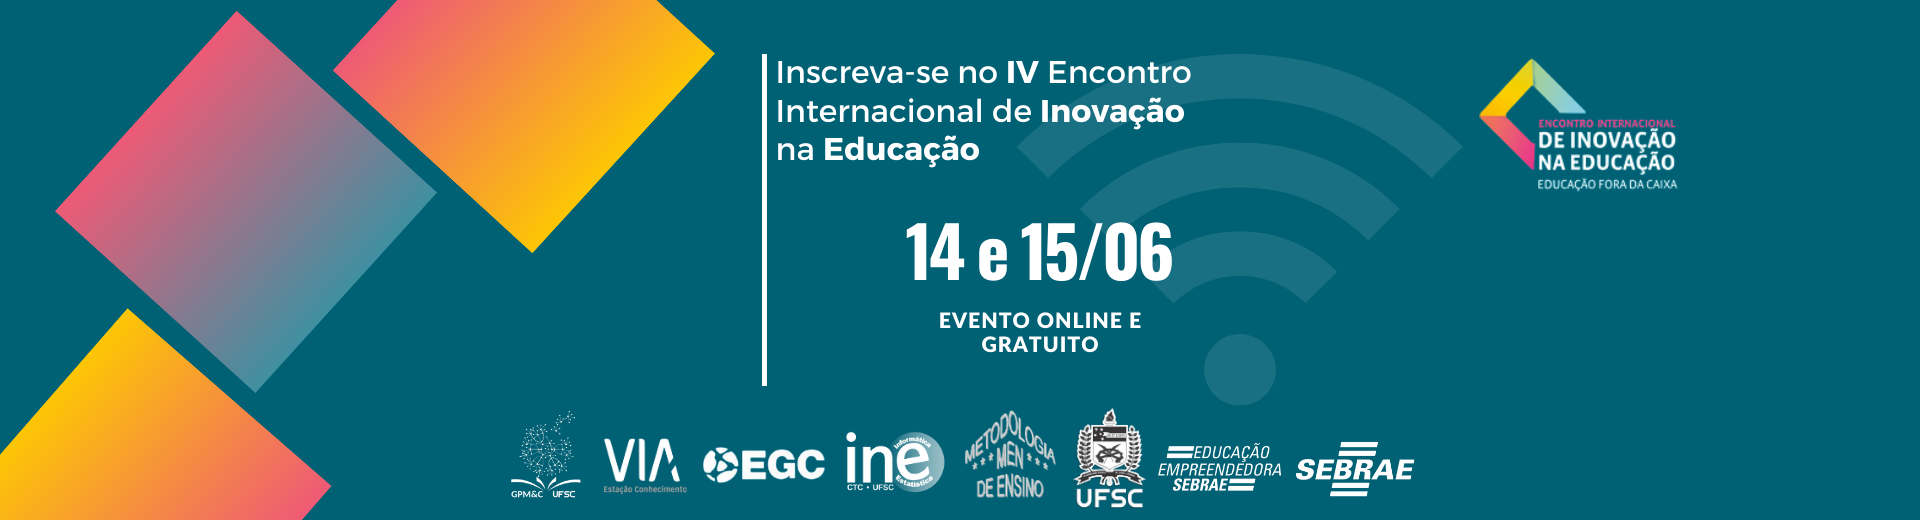 Sebrae/SC E UFSC Promovem Encontro Internacional Que Discute A Importância Da Inovação Na Educação